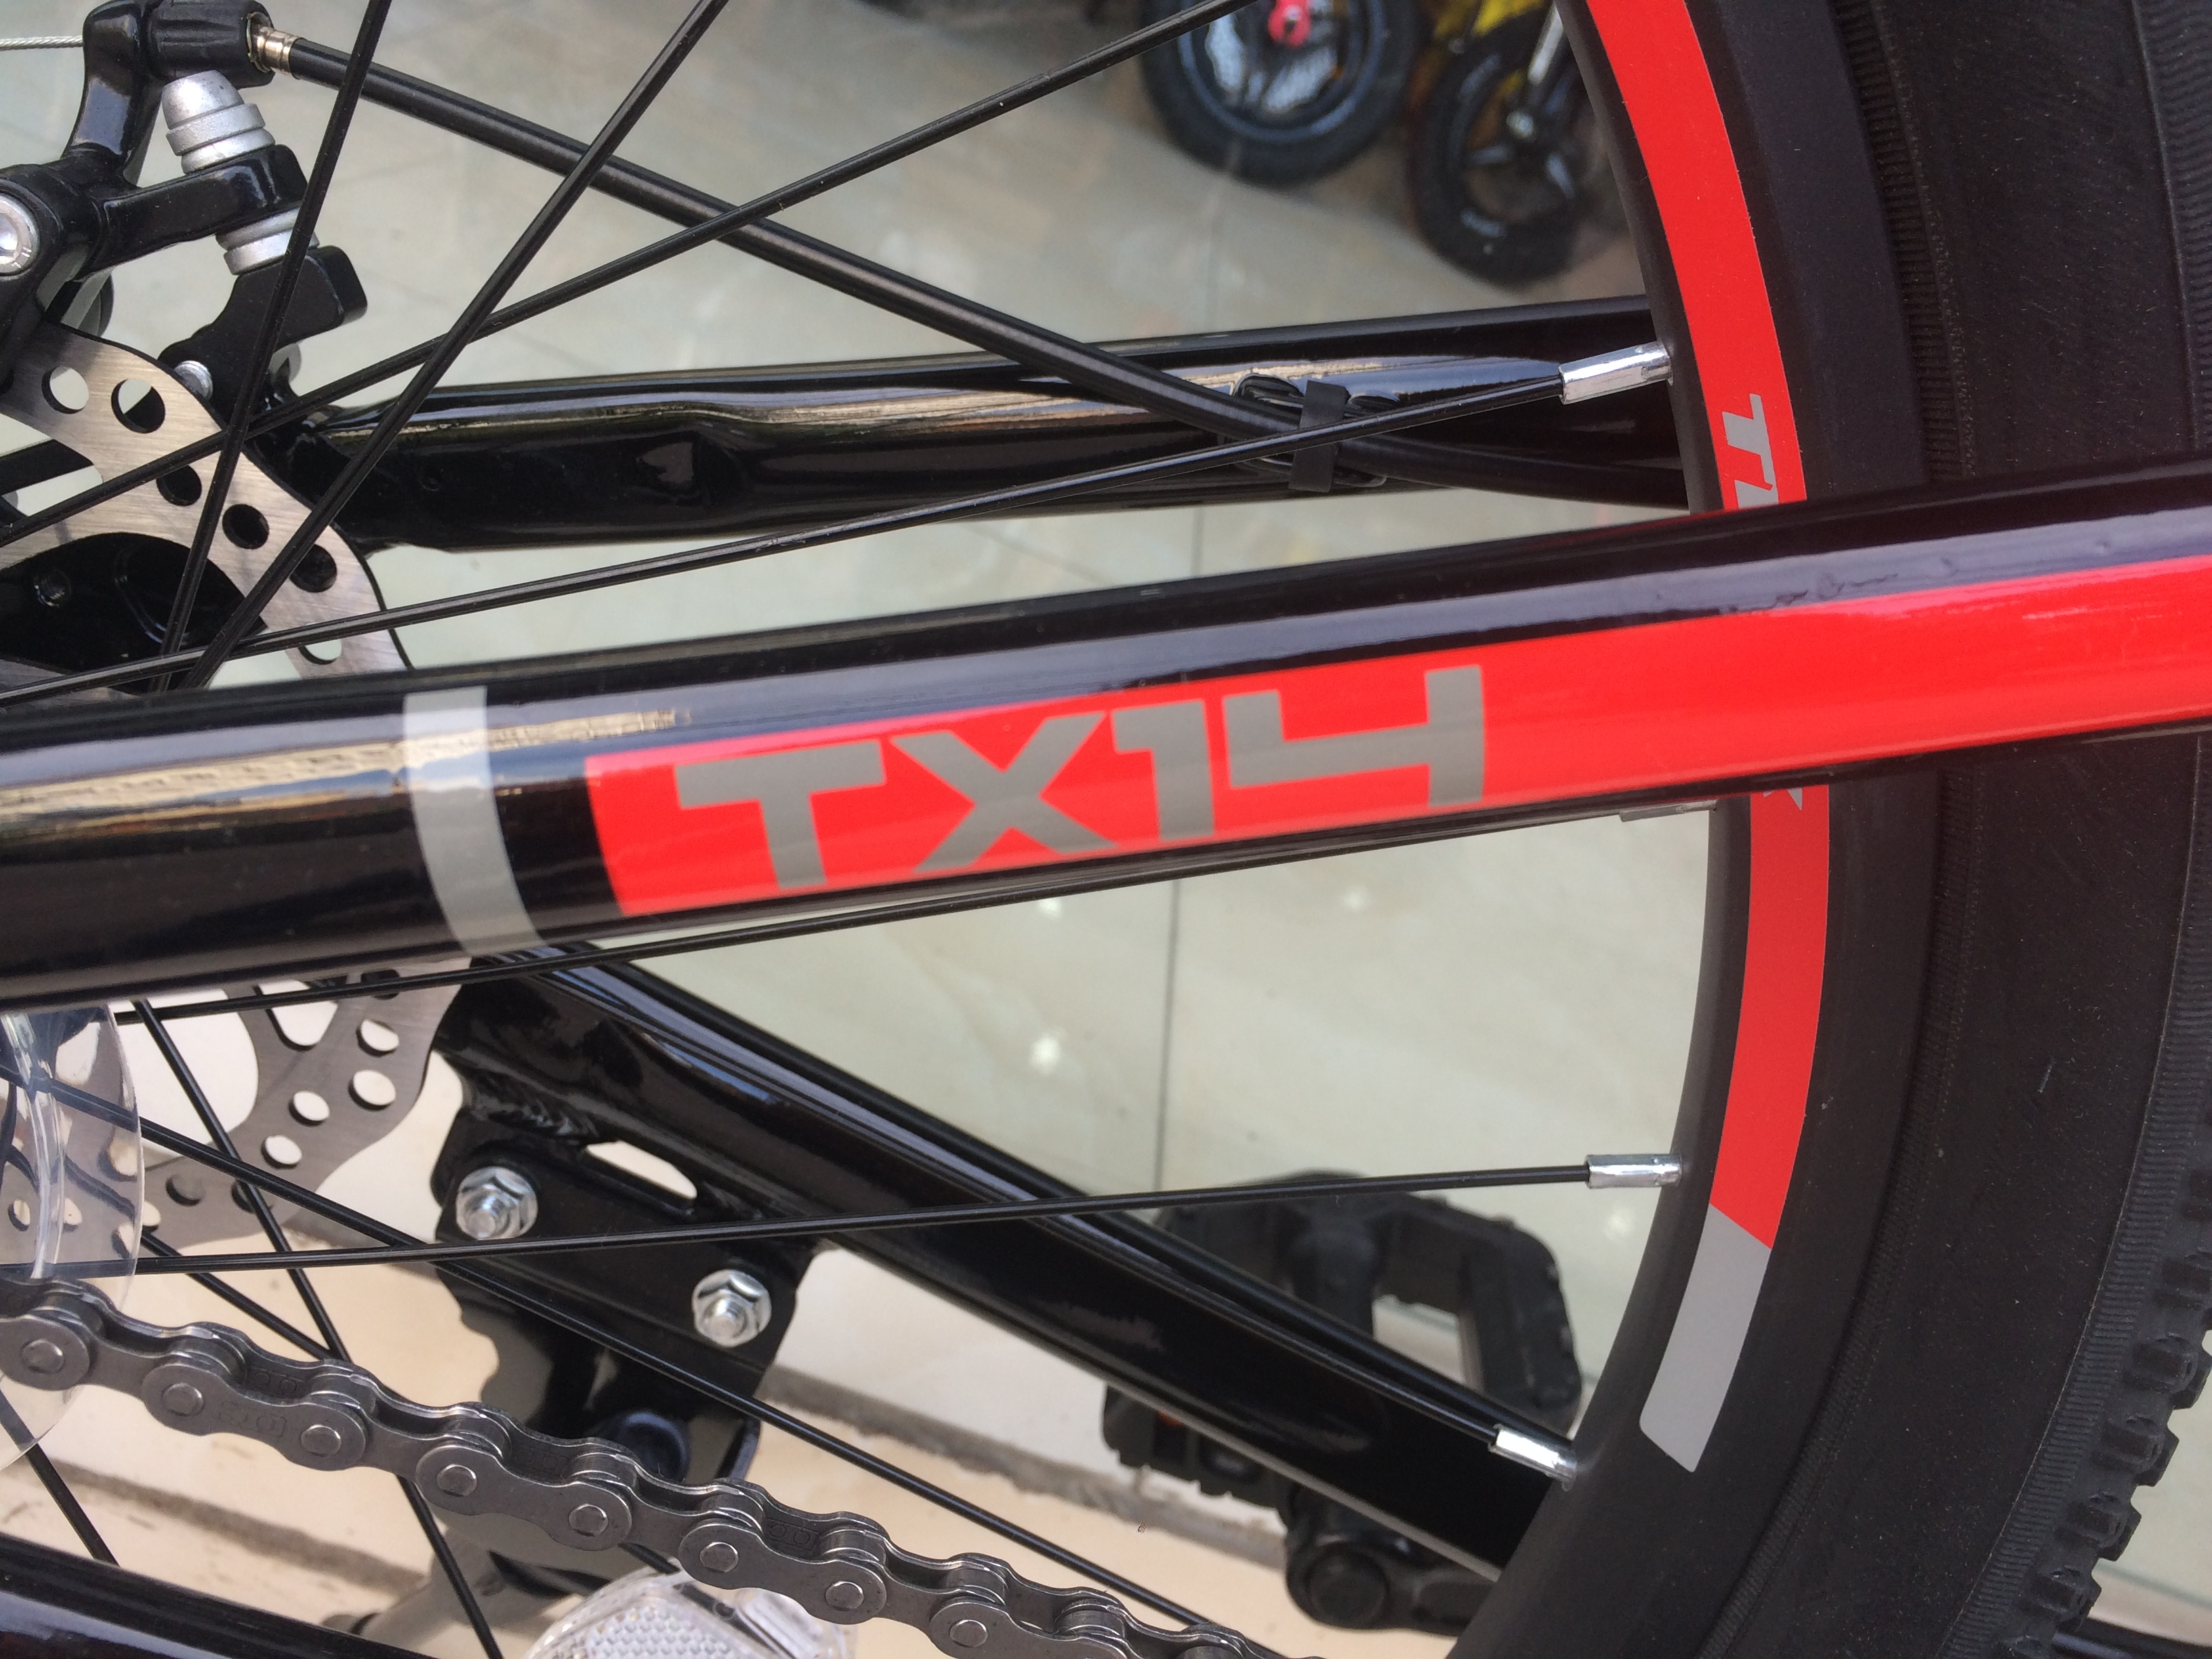 Xe đạp địa hình TrinX TX14 2018 Đen Đỏ